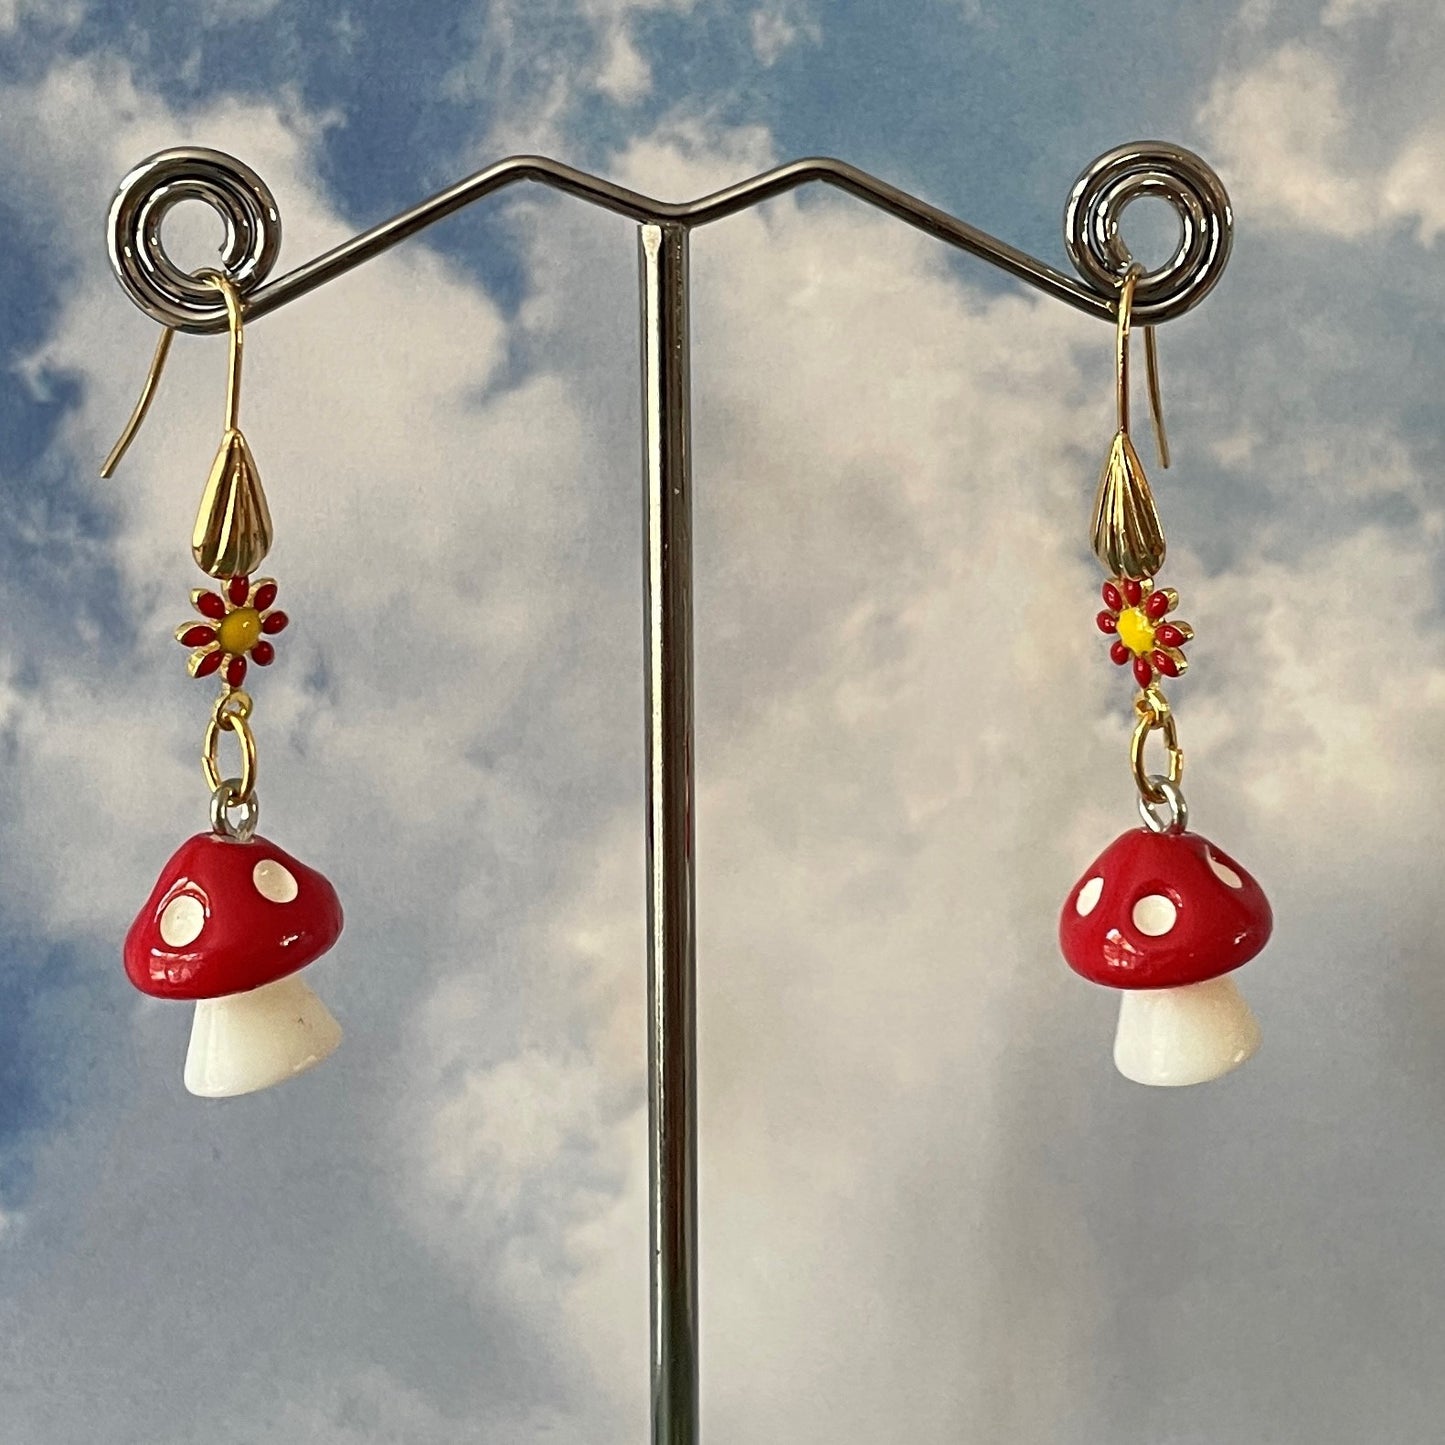 Handmade Red Mushroom Earrings by Brenda Gadow Clark